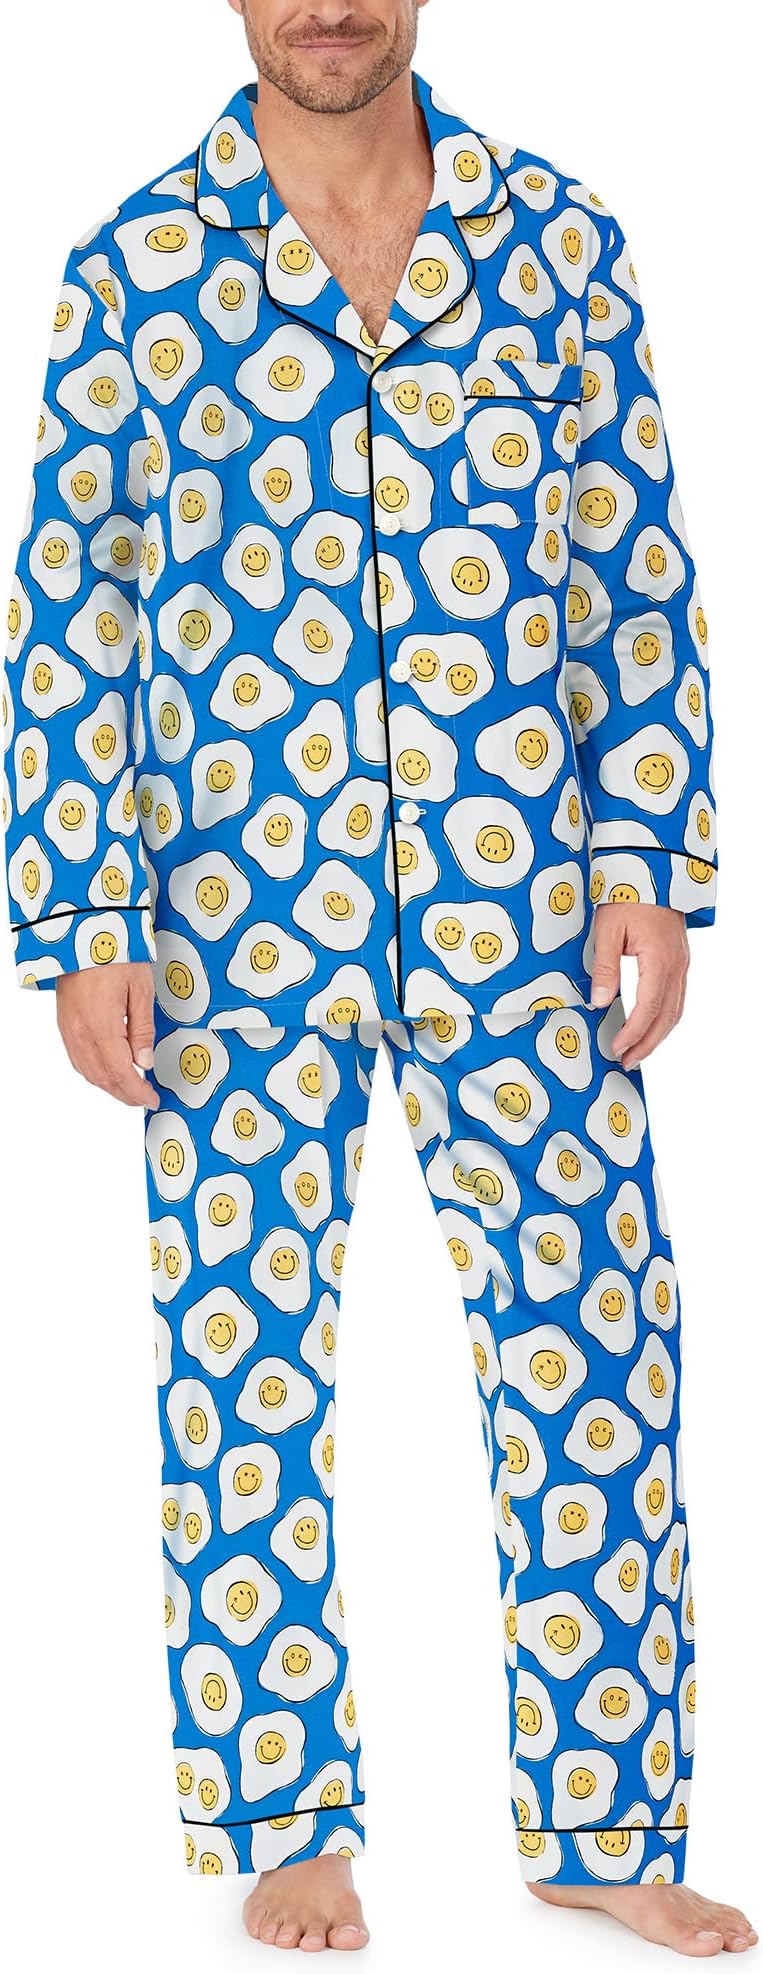 Zappos Print Lab: классический пижамный комплект с длинными рукавами Sunny Side Up Bedhead PJs, цвет Sunny Side Up smale holly sunny side up